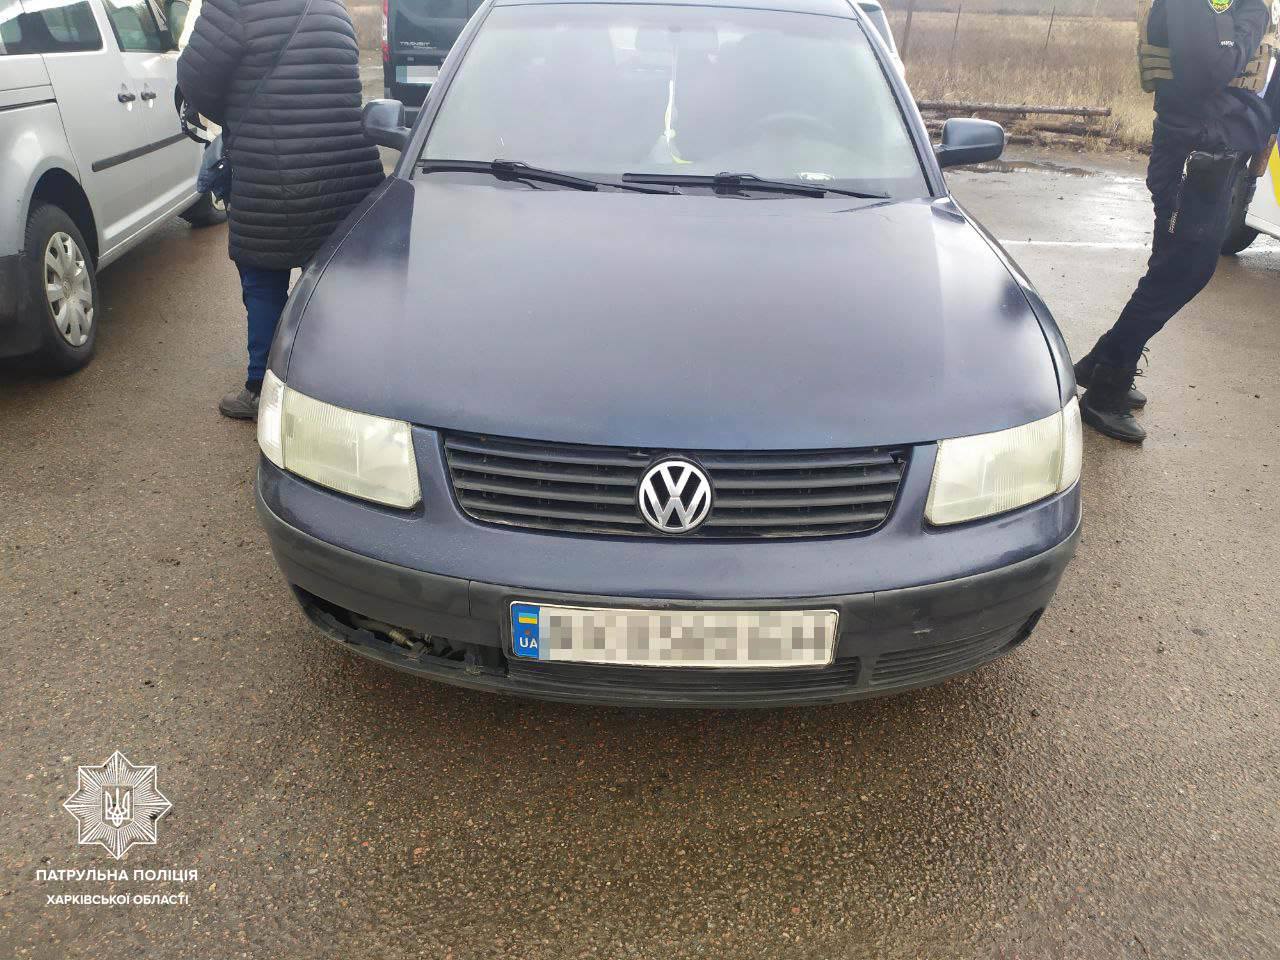 На Харківщині поліція виявила Volkswagen із підробленими документами